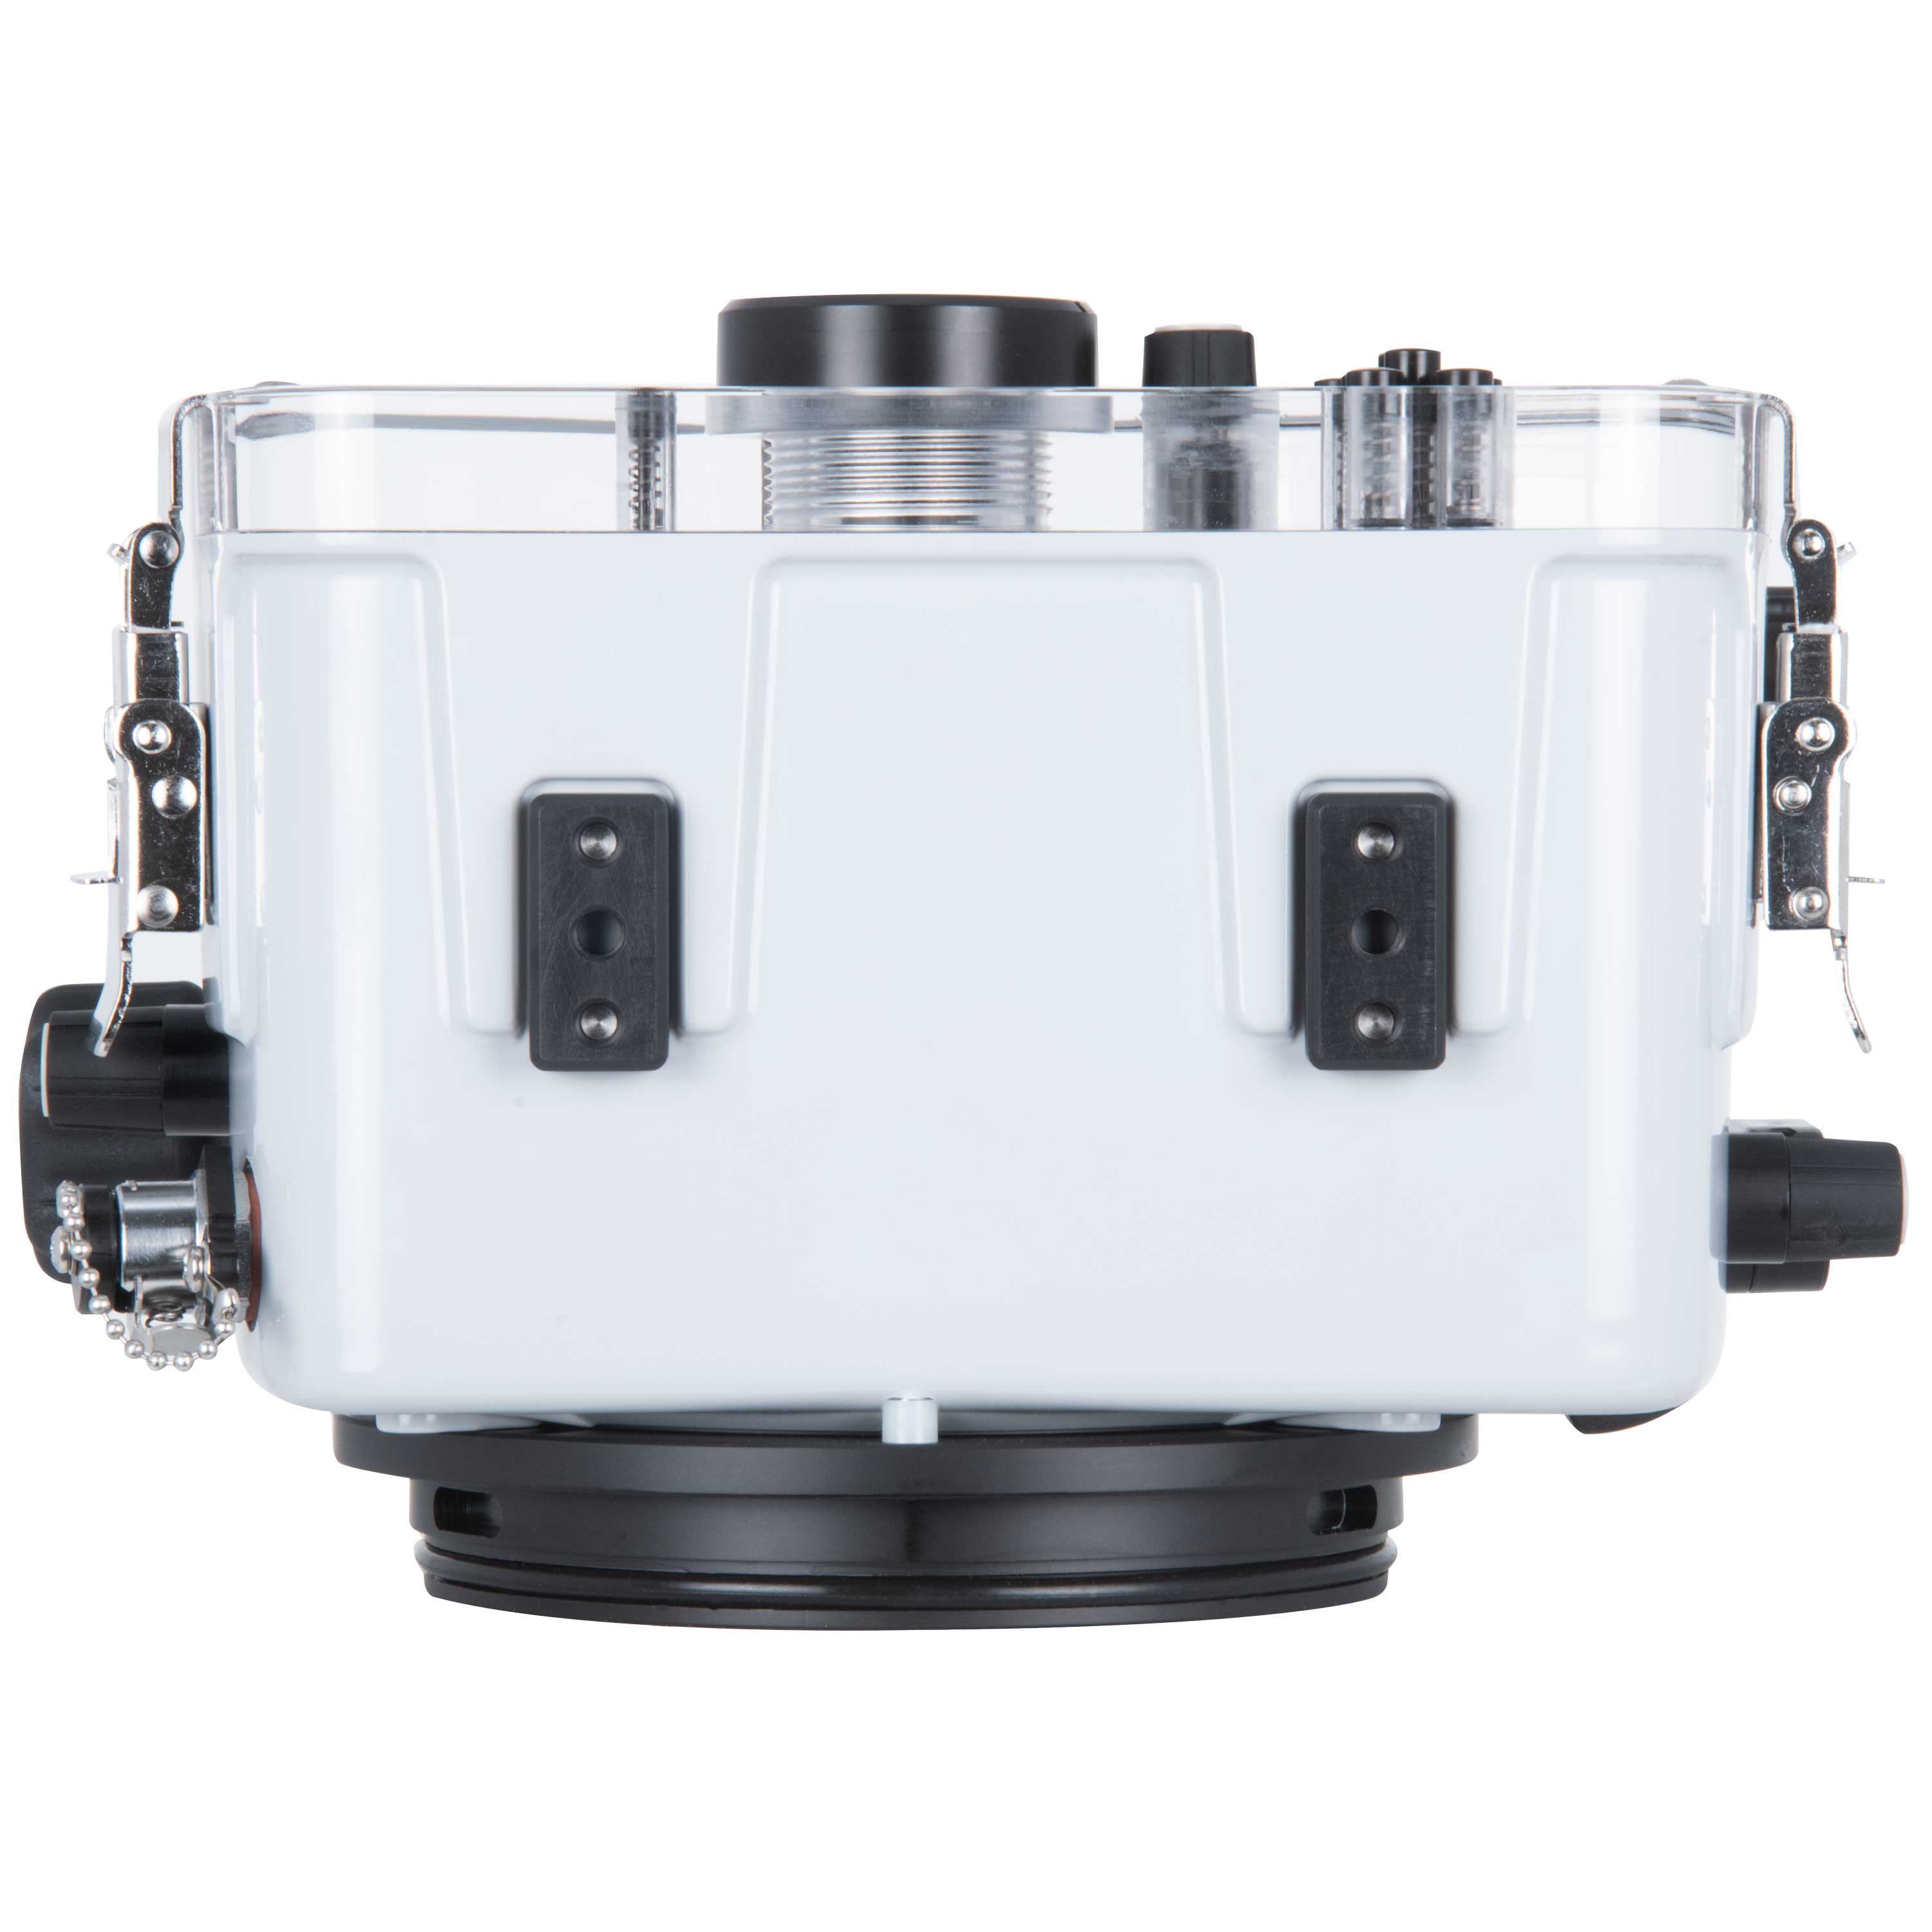 200DL Underwater Housing for Nikon Z50 Mirrorless Digital Cameras